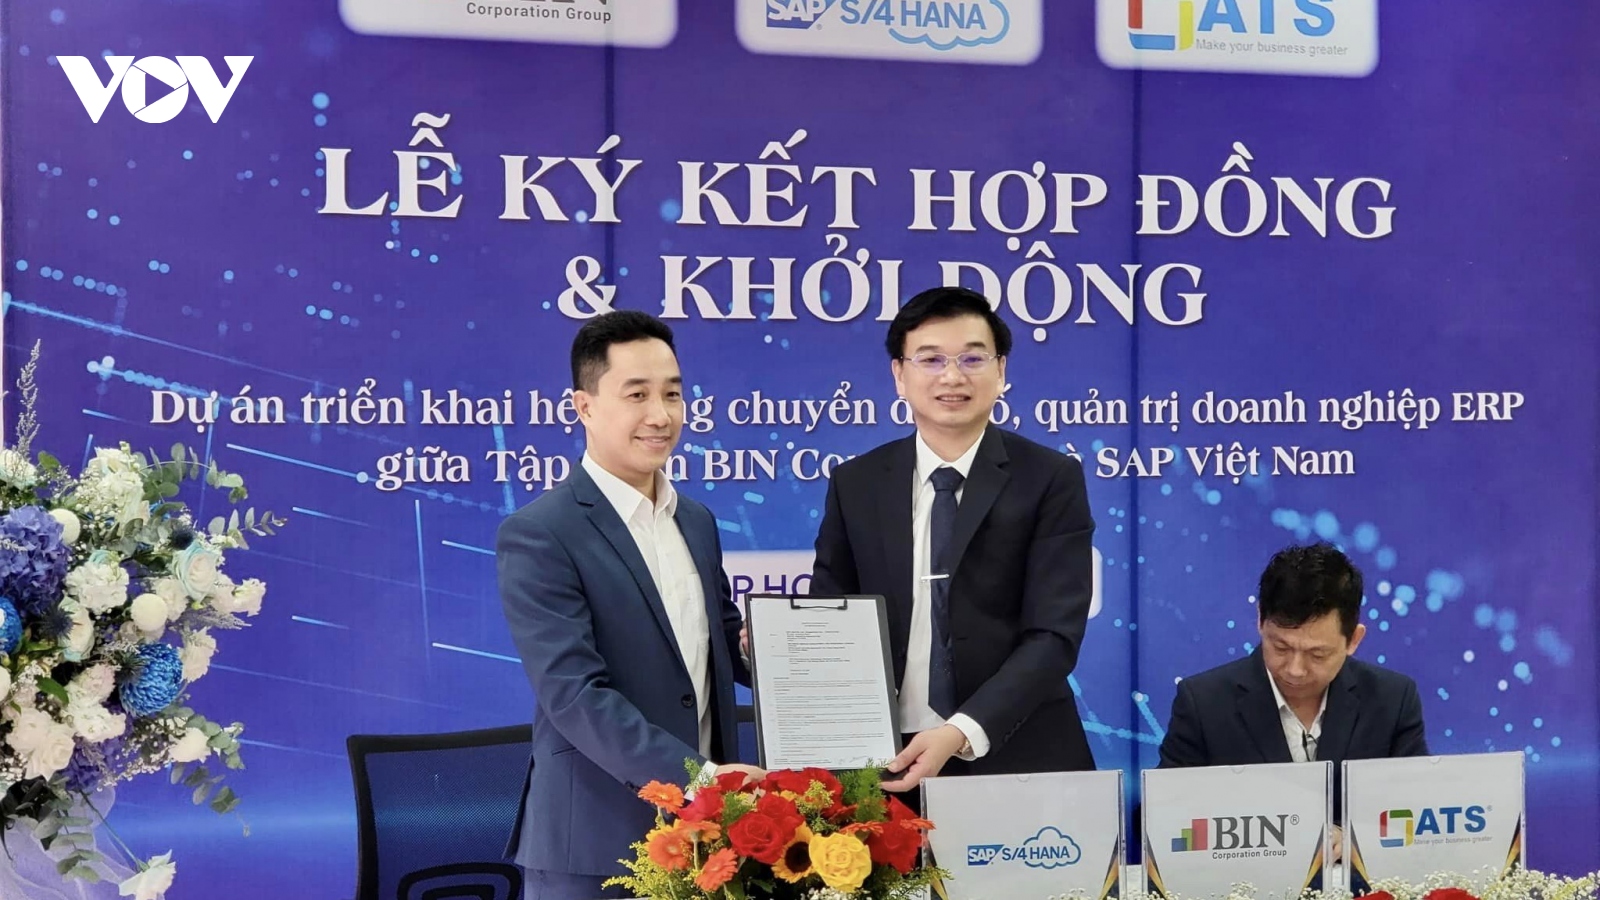 Chủ tịch Tập đoàn BIN Corporation: “Thay đổi cái nhìn về doanh nhân Việt Nam”